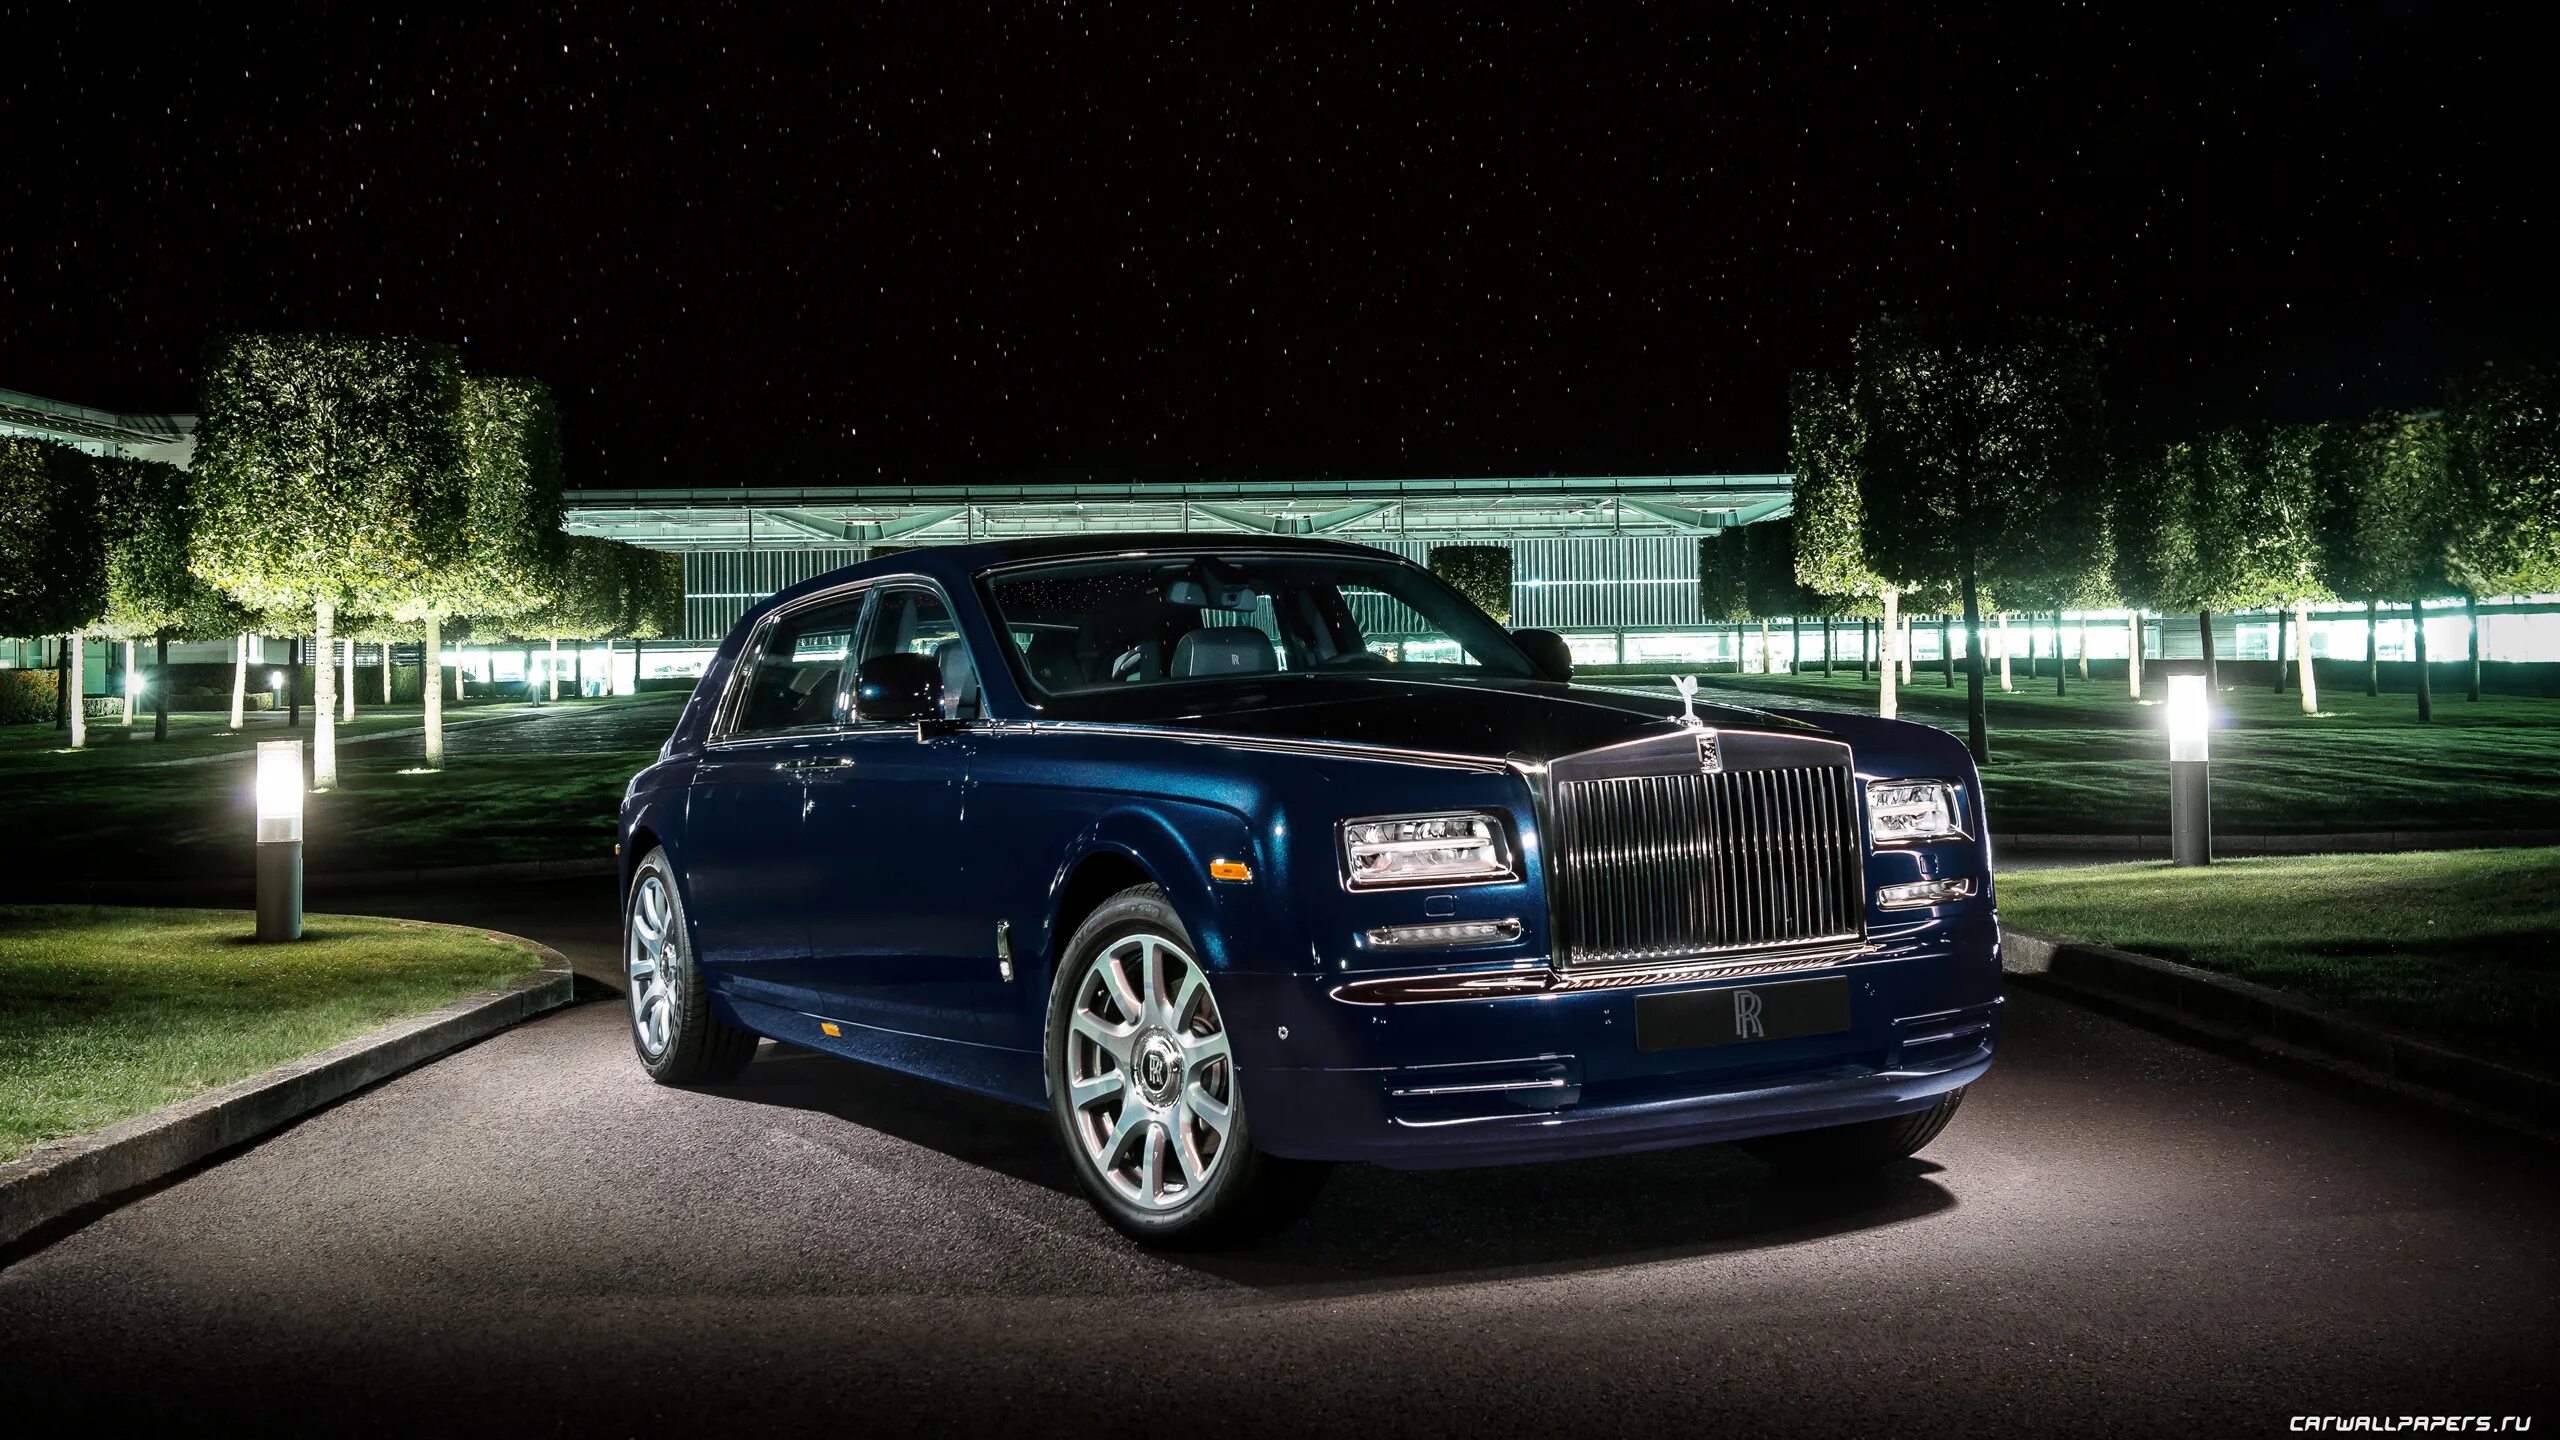 Rolls royce arcadia. Rolls Royce Phantom 2013. Rolls-Royce Celestial Phantom, Rolls Royce. Rolls Royce Phantom Limo. Rolls Royce Phantom 2015.